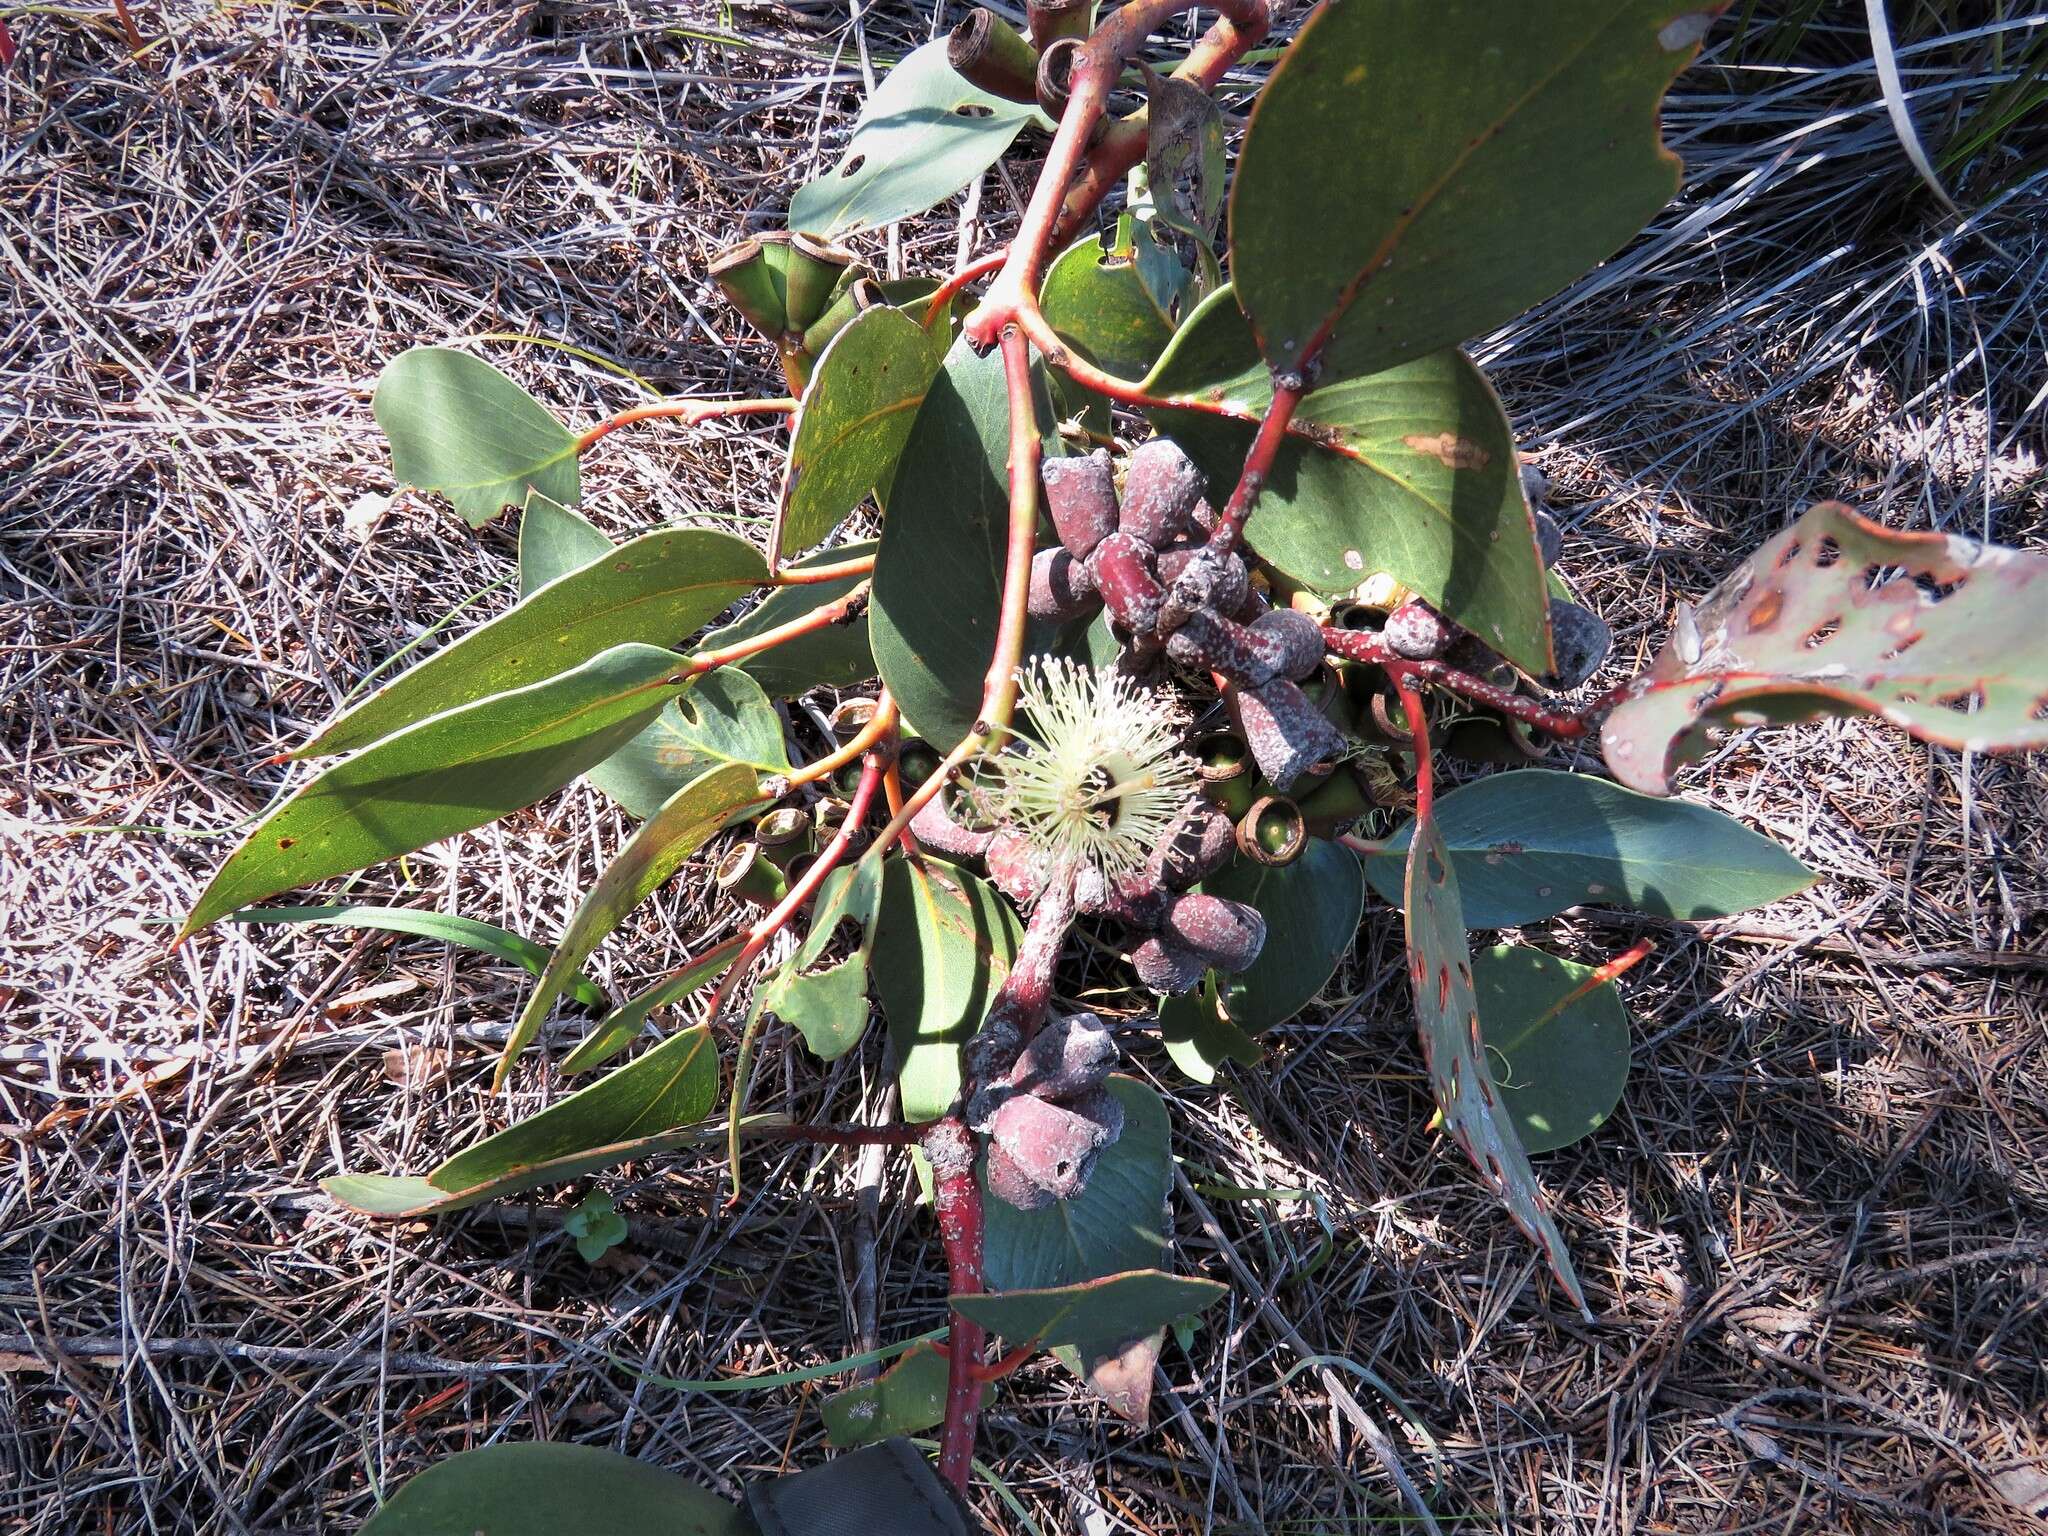 Image of coarse-leaf mallee